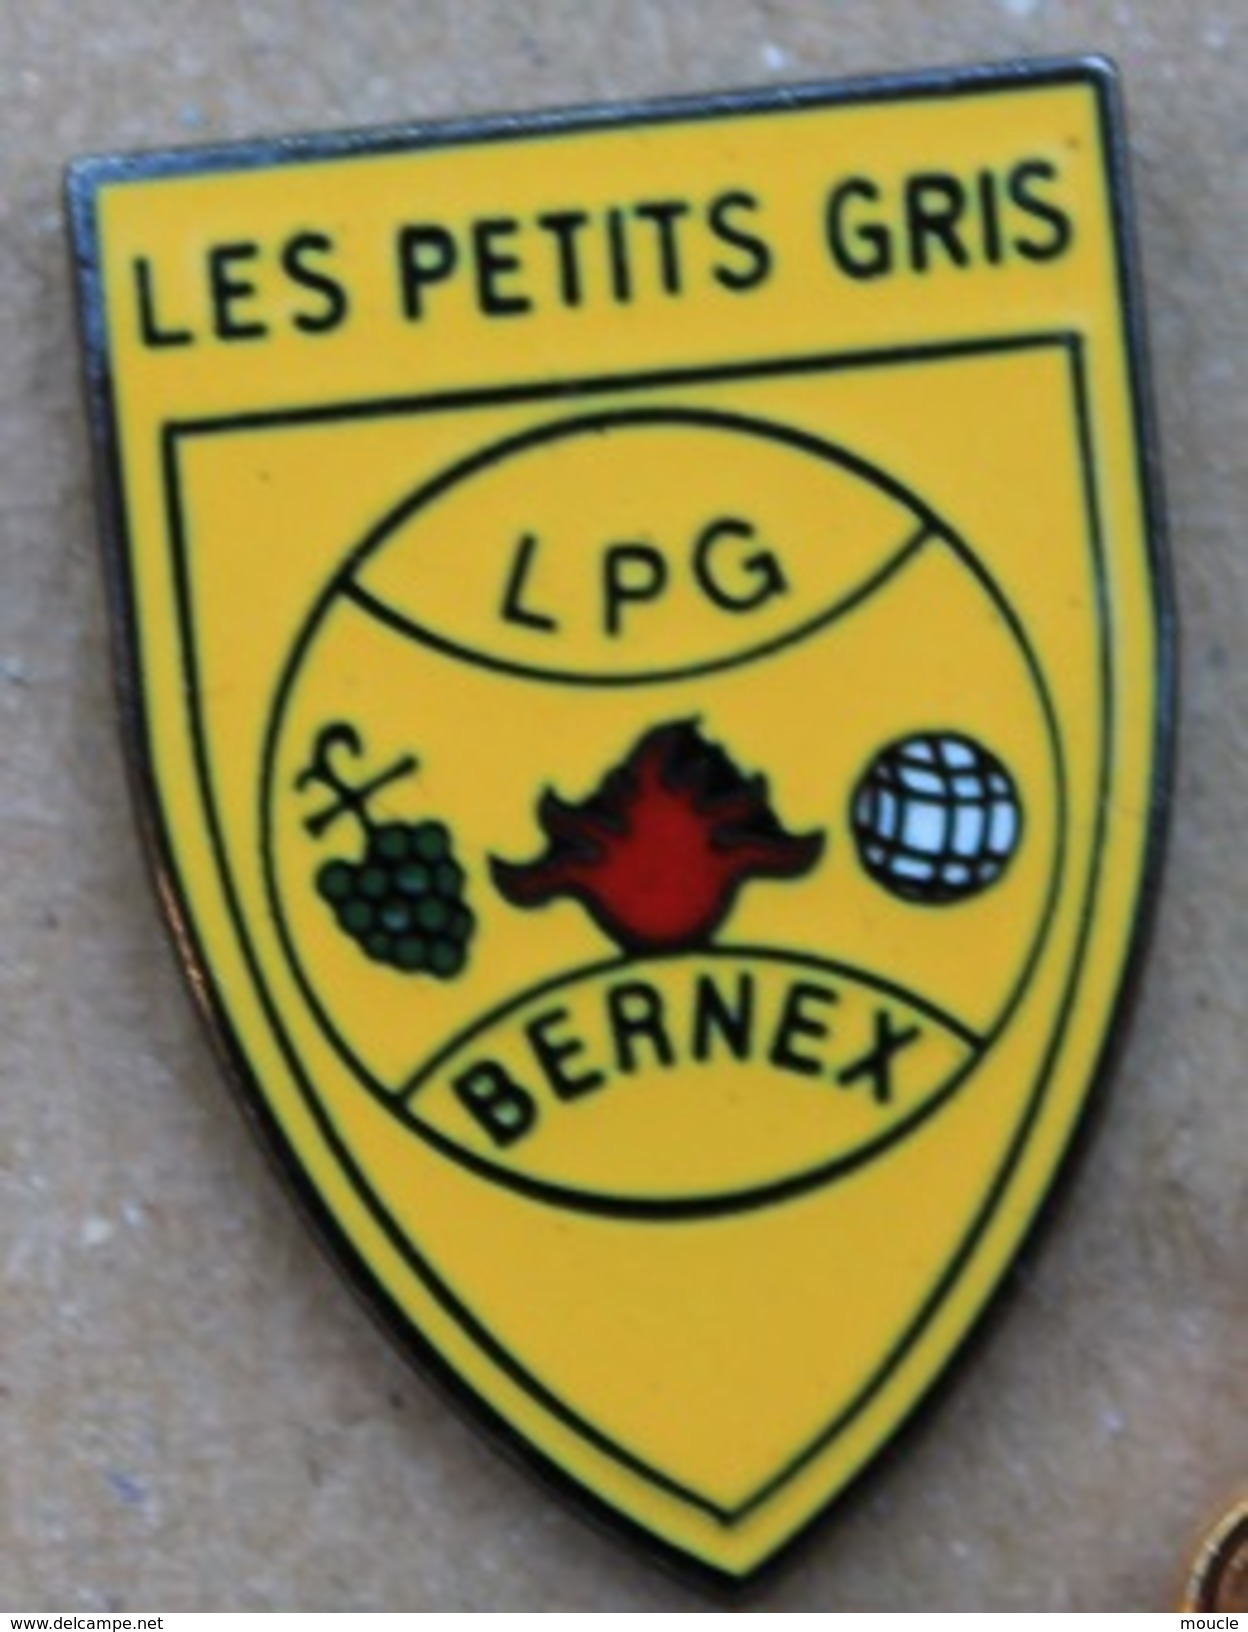 LES PETITS GRIS - LPG - CLUB DE PETANQUE - BERNEX - GENEVE - SUISSE - BOULE - RASINS  -            (ROSE) - Bowls - Pétanque